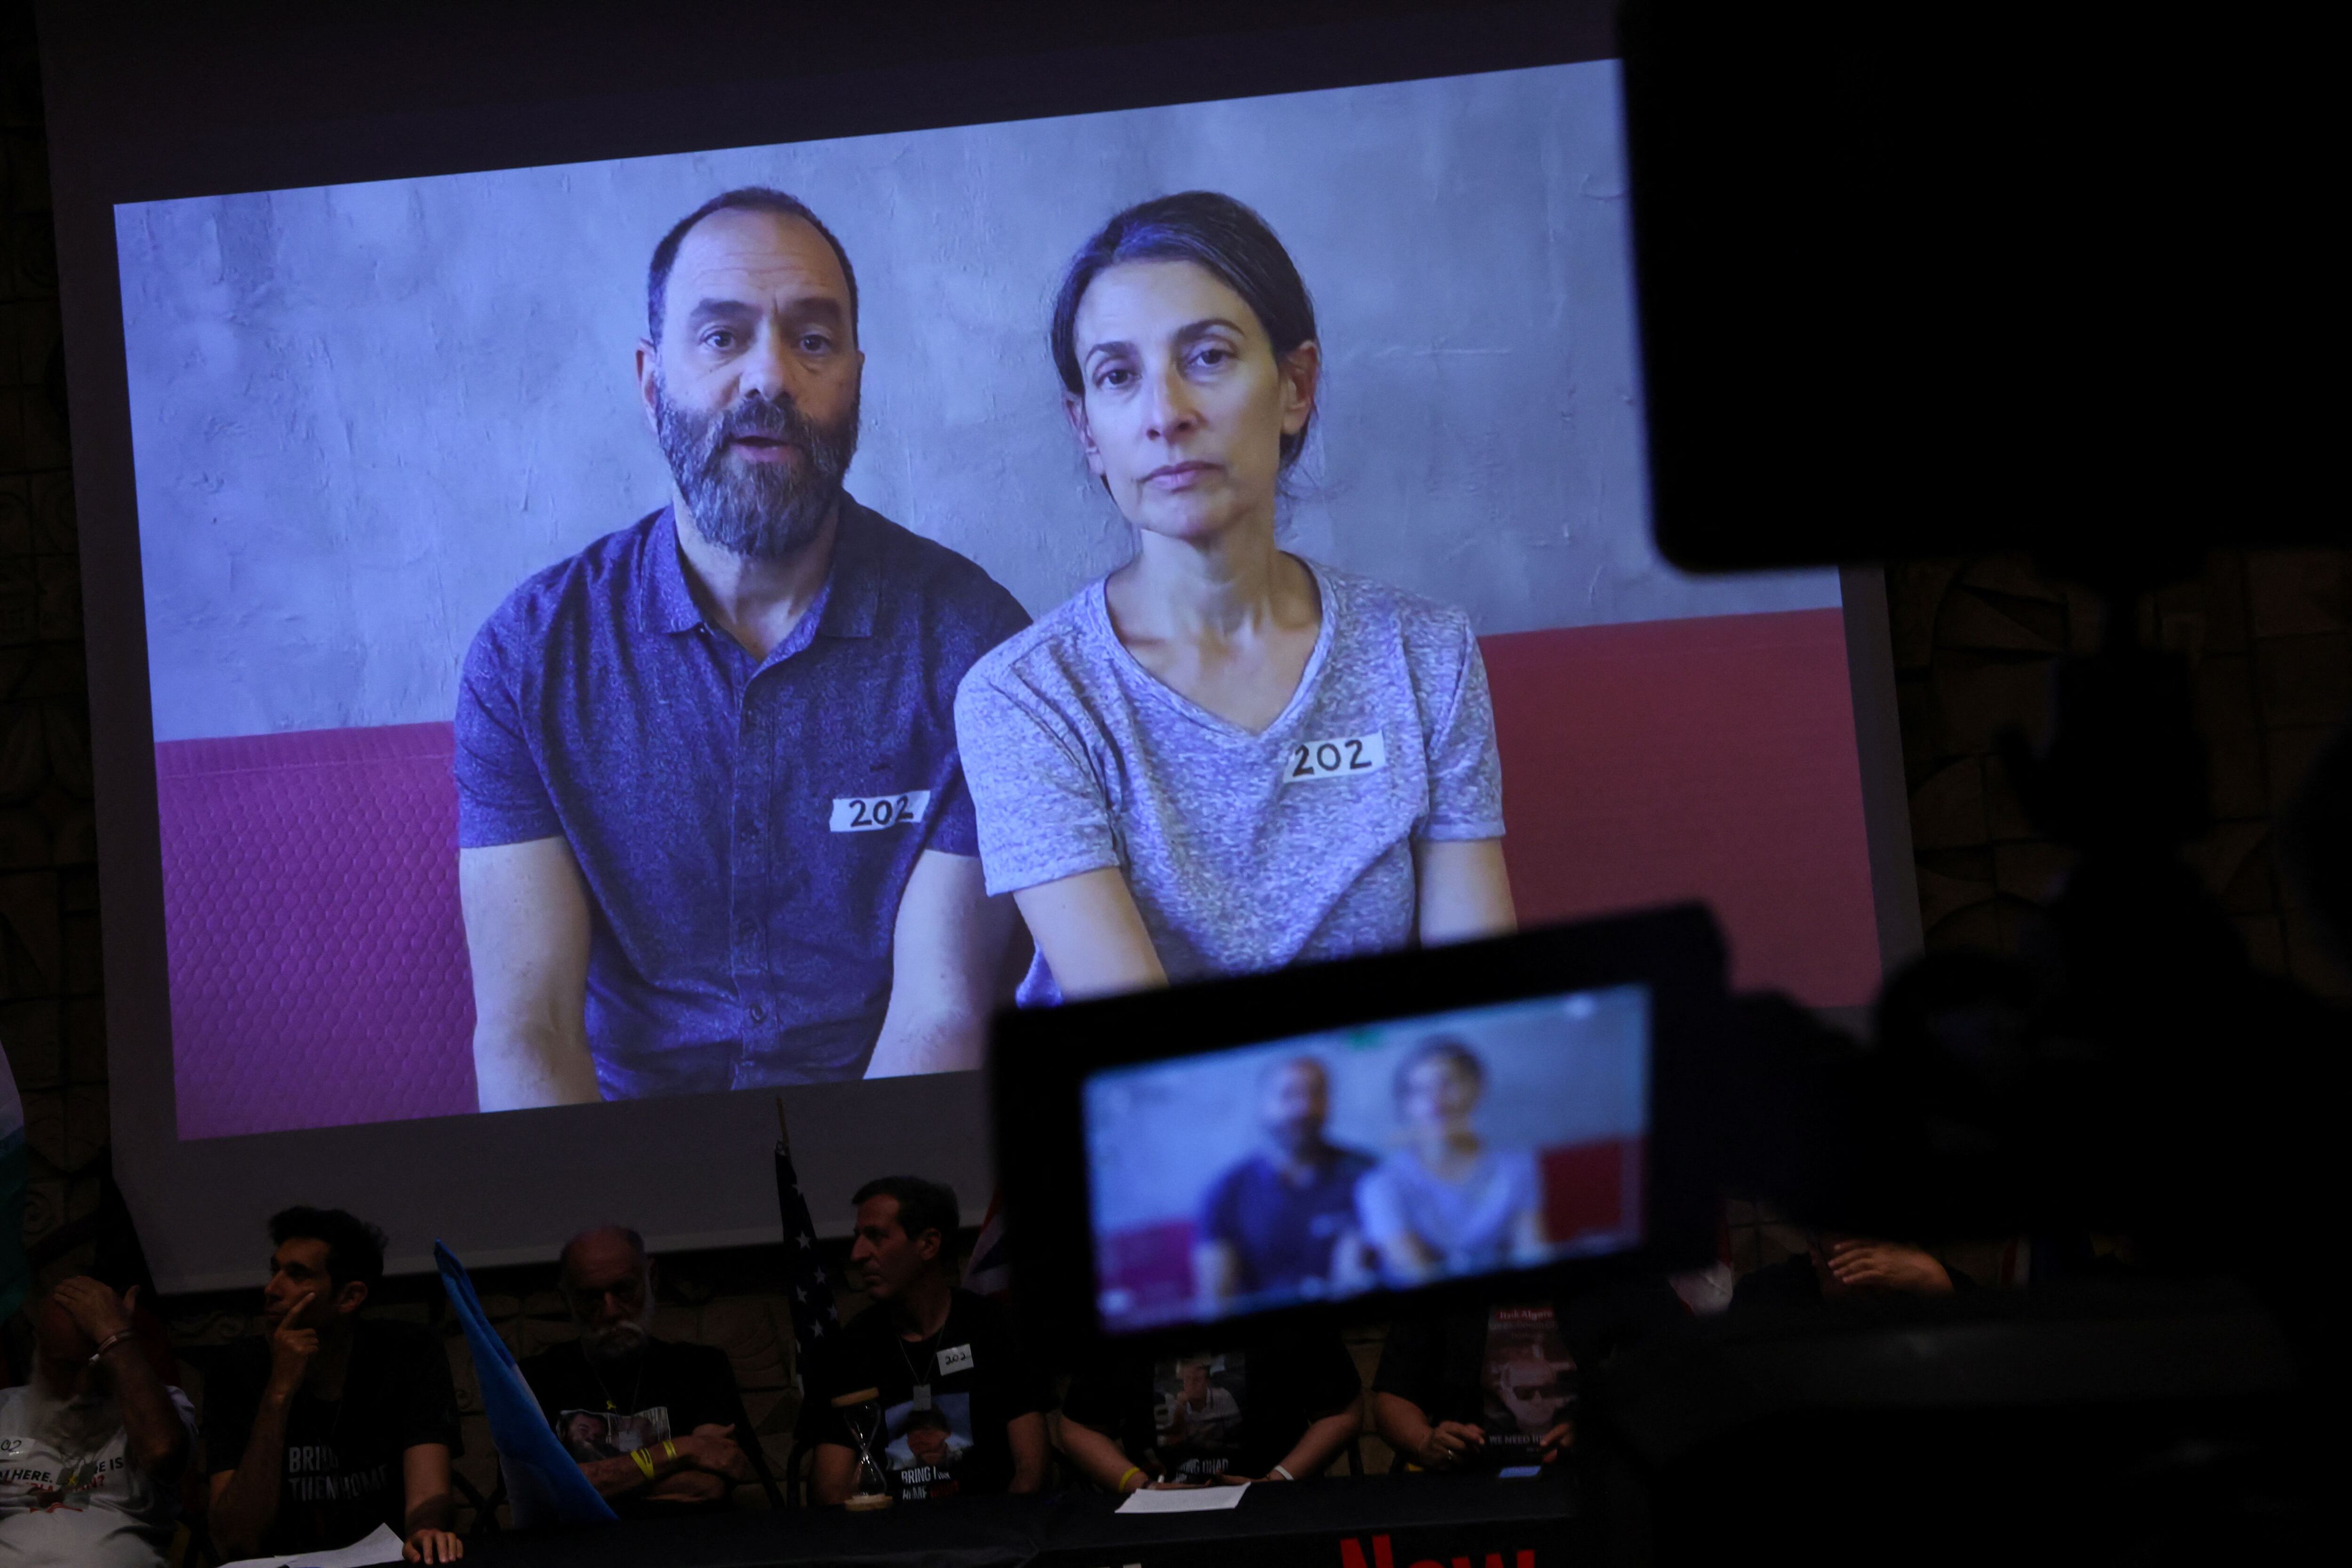 Jonathan Polin and Rachel Goldberg, padre y madre del rehén Hersh Goldberg-Polin, hablan con la prensa en Tel Aviv tras observar el video de su hijo difundido por Hamas. Foto: 路透社